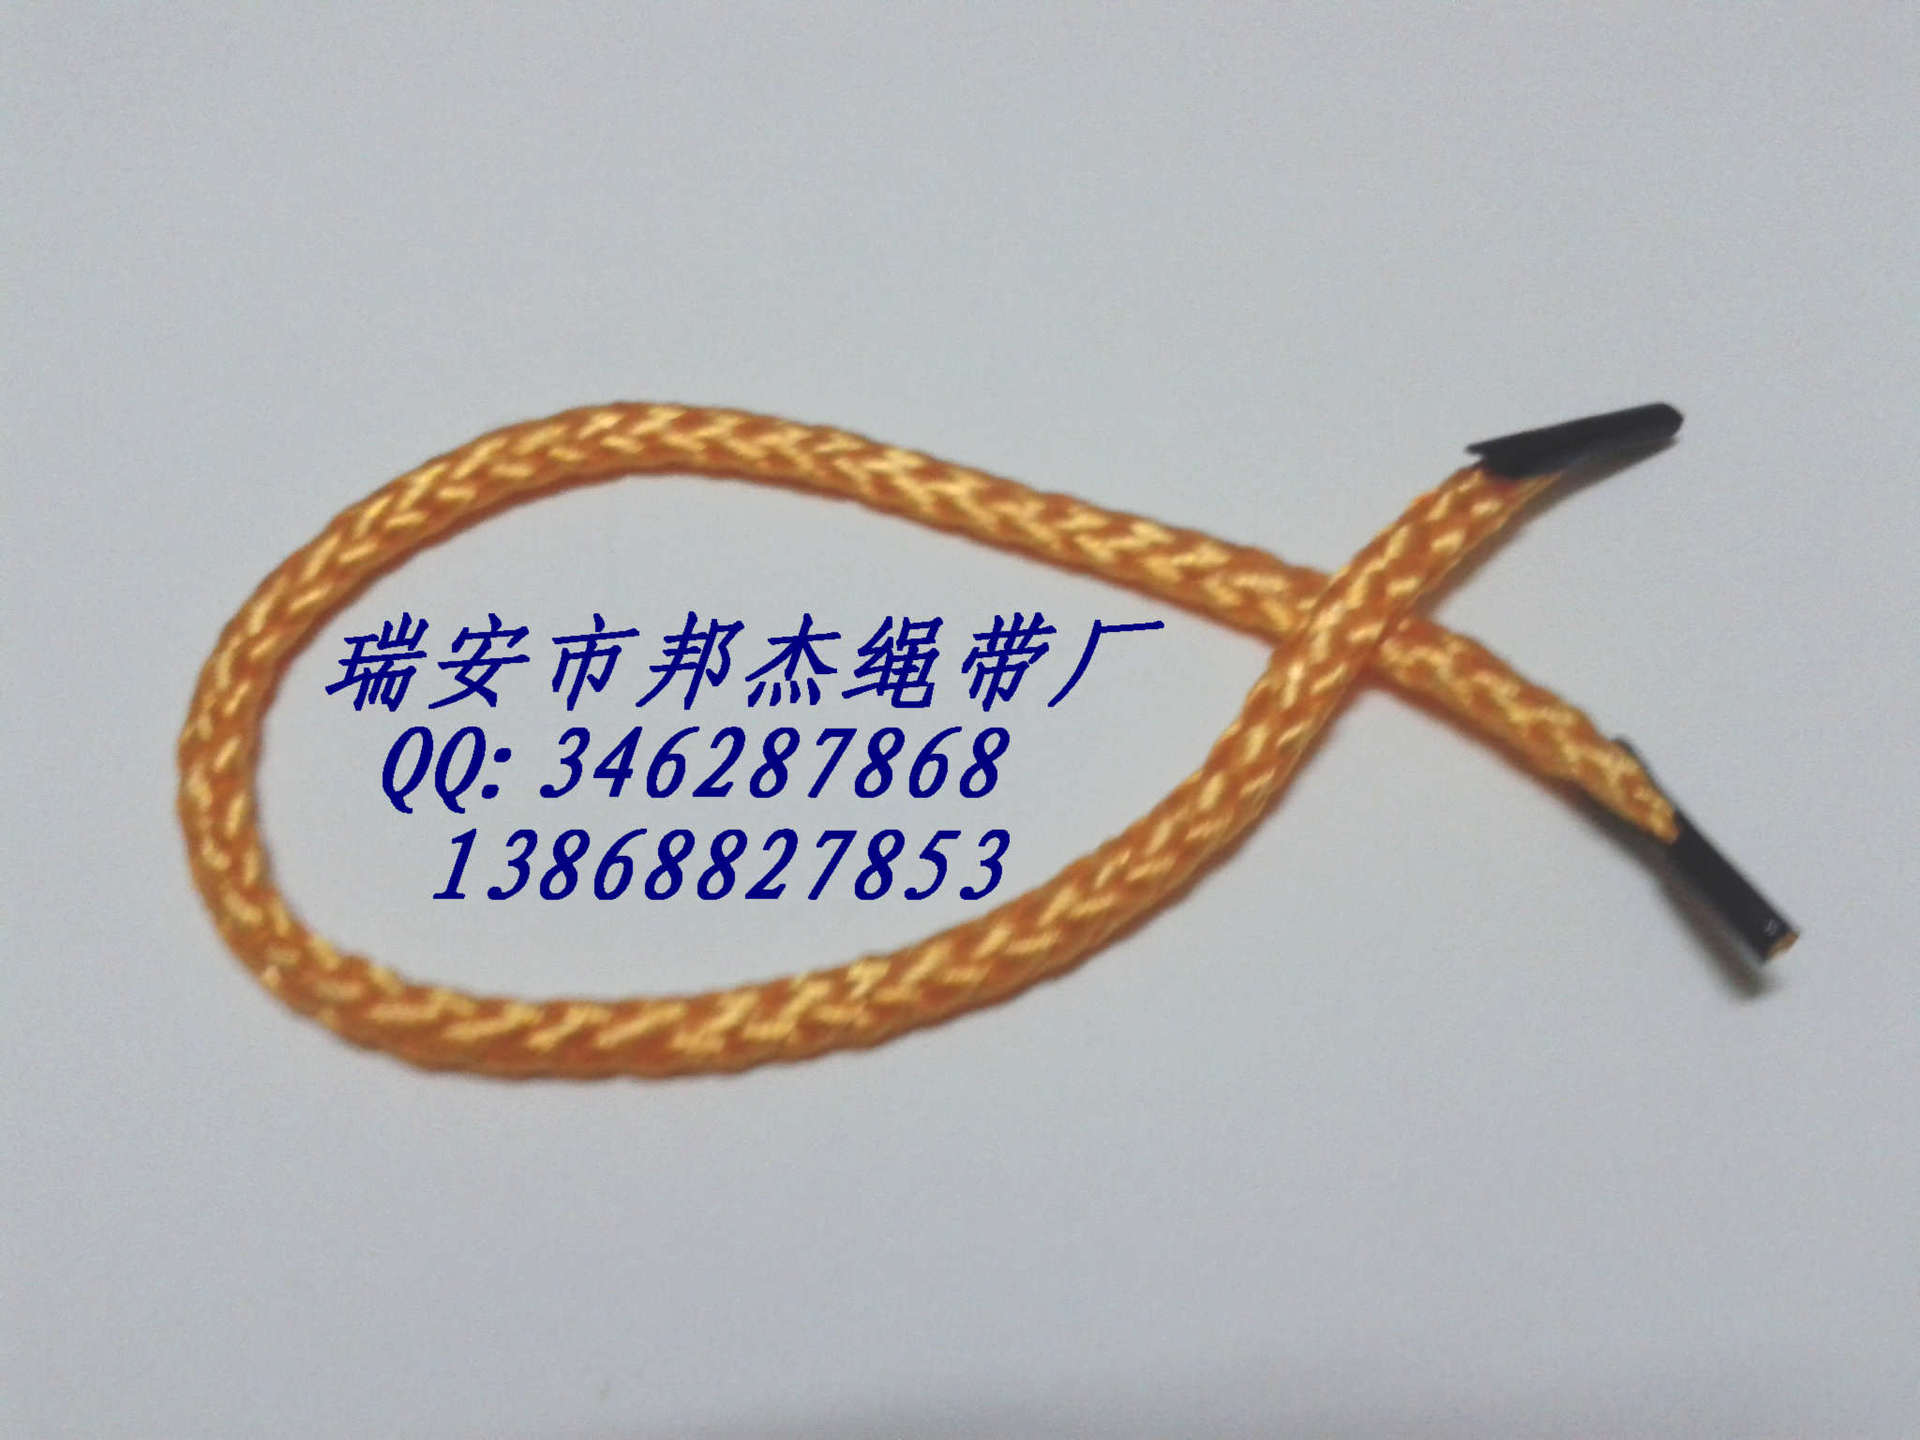 厂家直销 八股绳 绳子 金黄丙纶绳 可订制各种颜色粗细长度